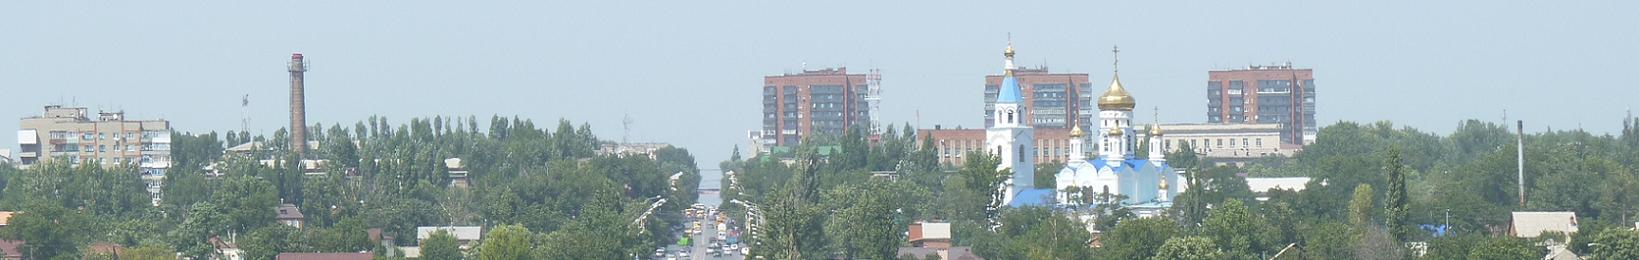 Панорама города Шахты №1